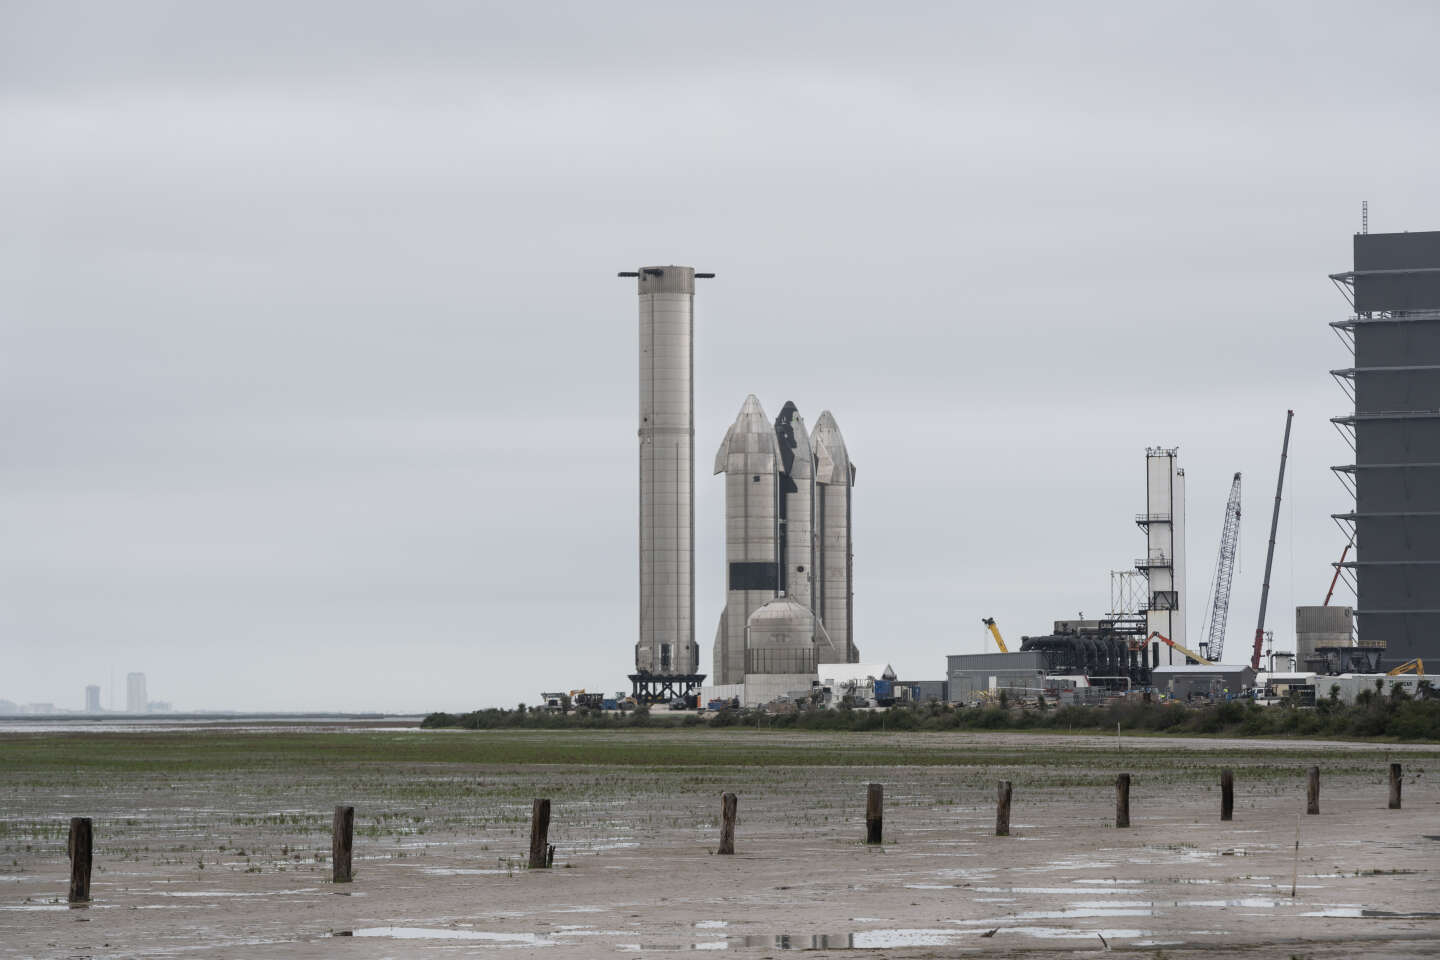 Con la base de lanzamiento de SpaceX, la vida en el pueblo de Boca Chica en Estados Unidos se pone patas arriba